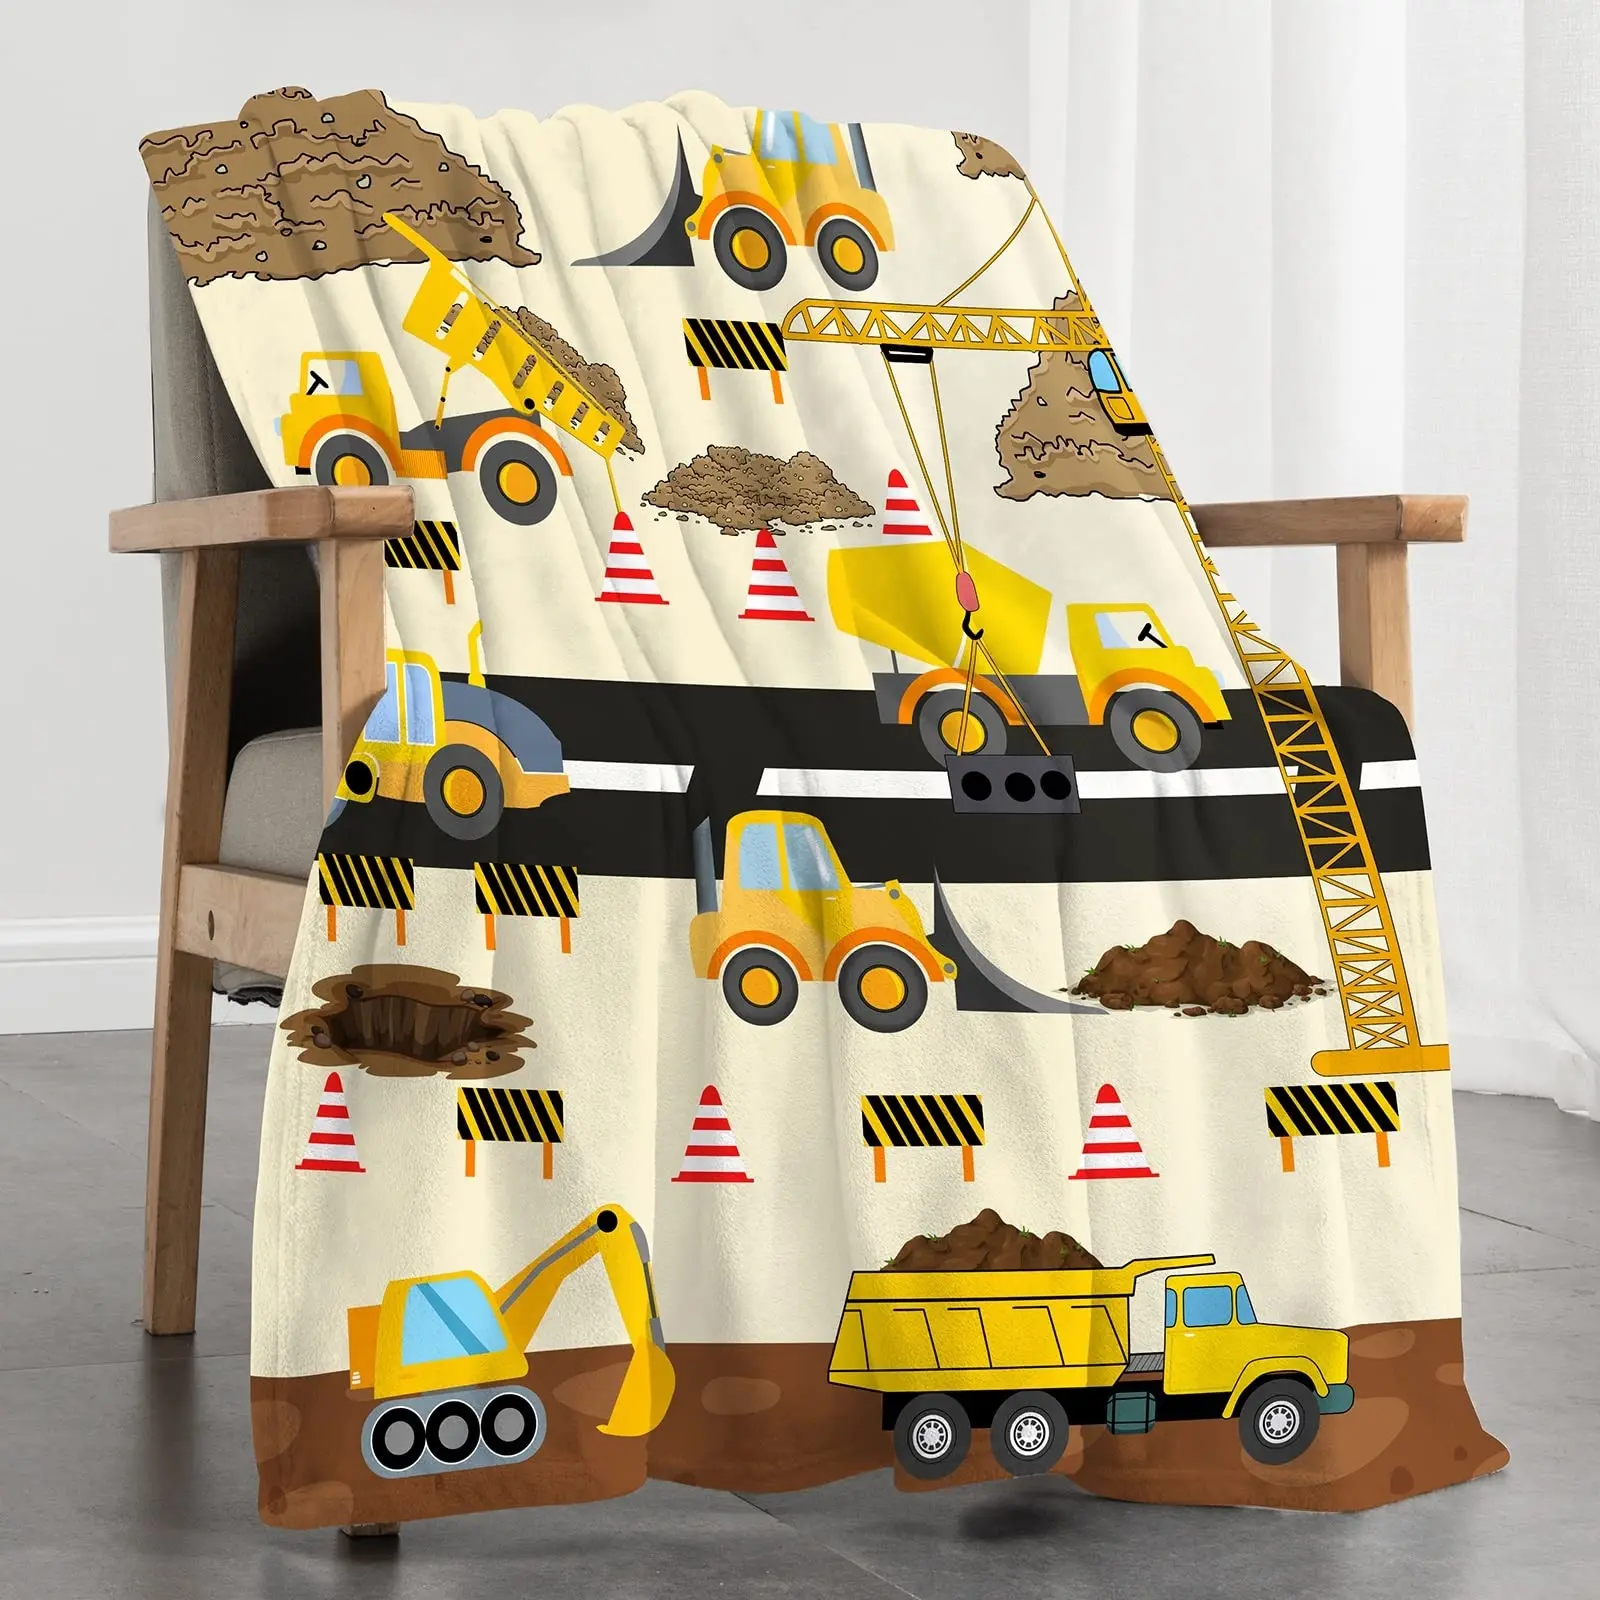 

Желтое одеяло для строительного грузовика, мультяшный трактор, автомобили, фланелевые покрывала для всех сезонов, детское одеяло для экскаватора, дивана